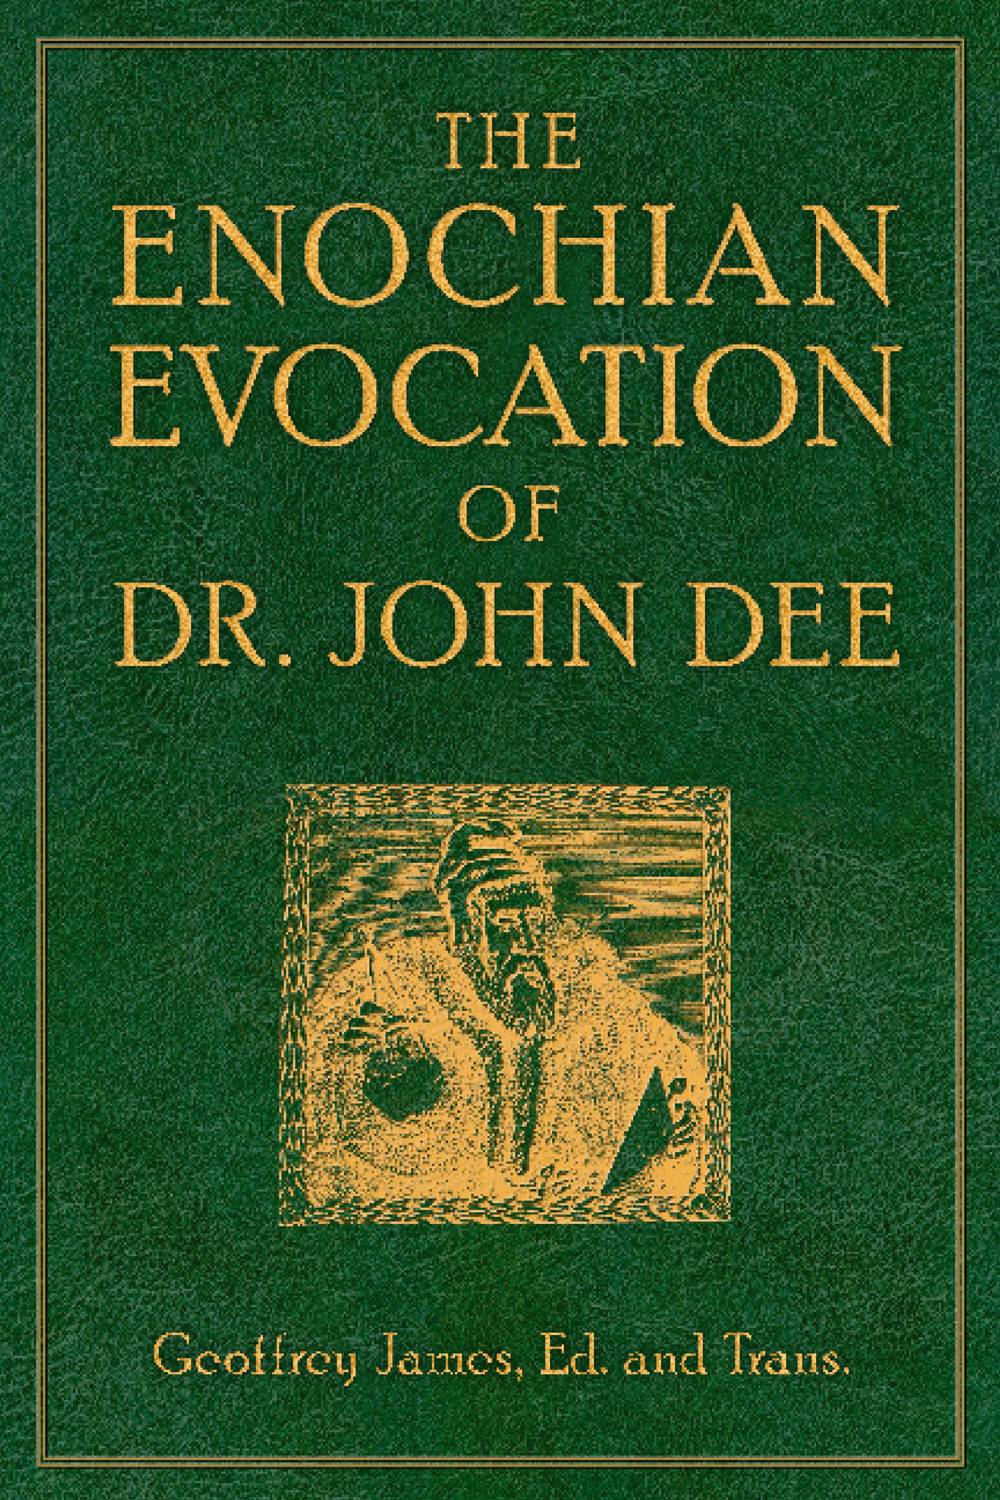 Enochian evocation of dr. john dee